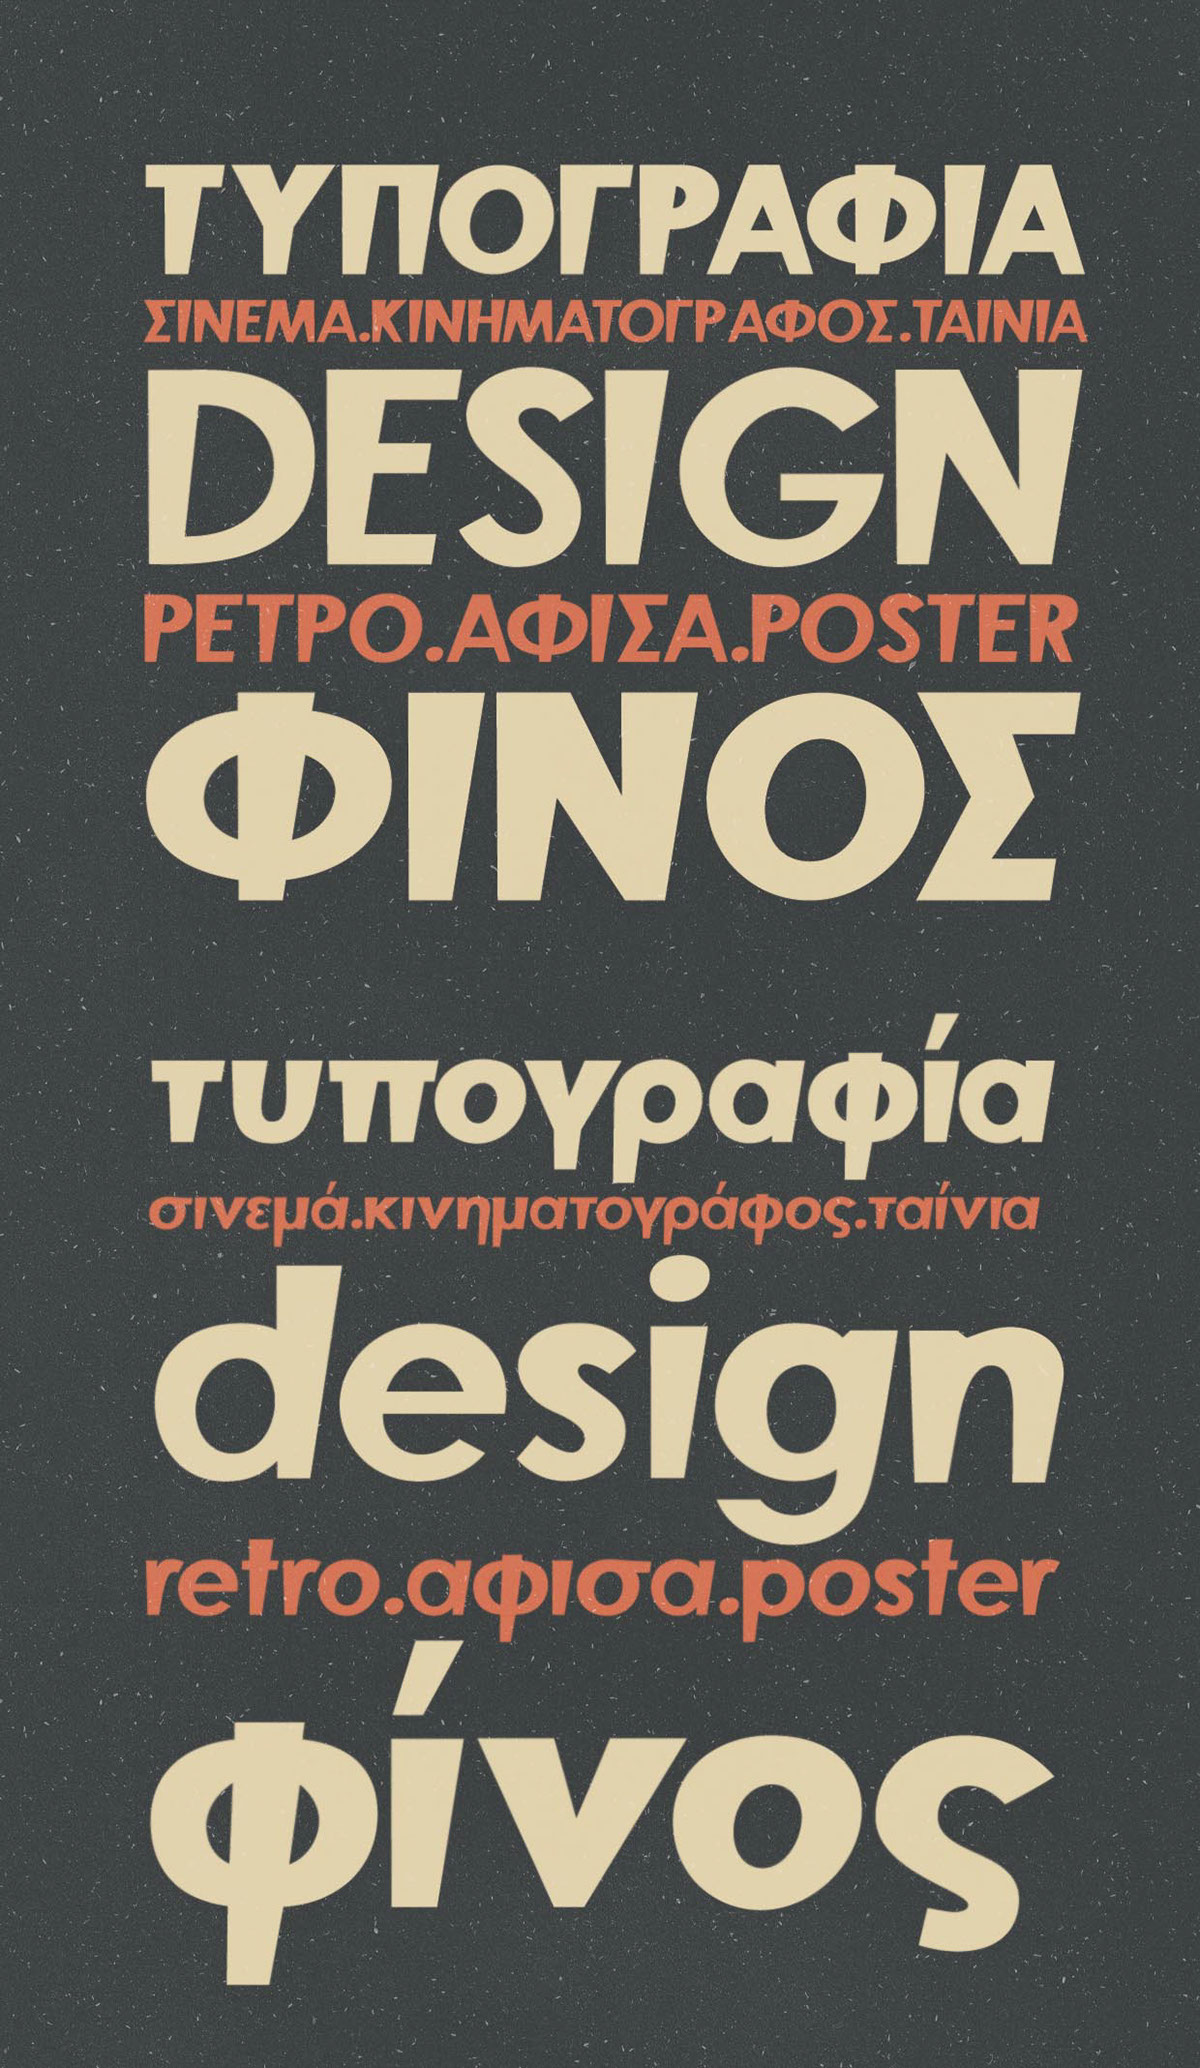 复古设计风格底部变窄英文无衬线字体 Finos Typeface插图(4)